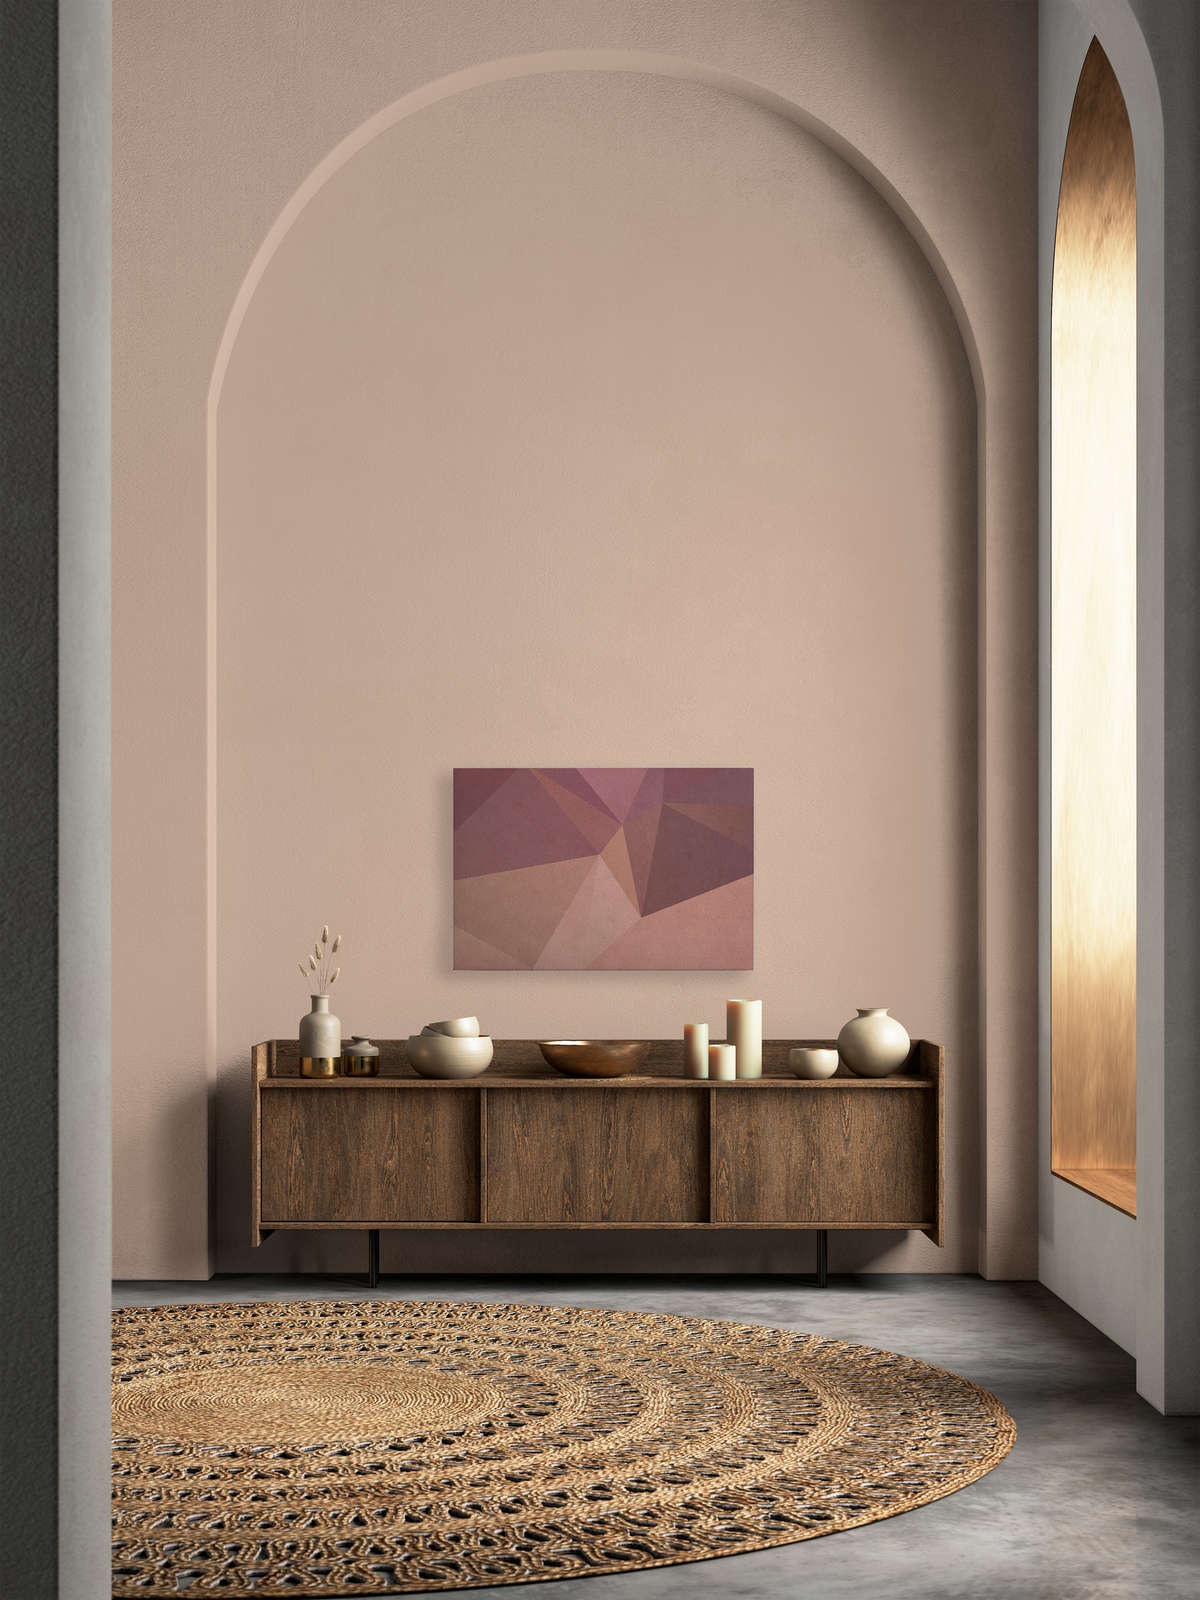             Tableau toile 3D optique géométrique | orange, violet - 0,90 m x 0,60 m
        